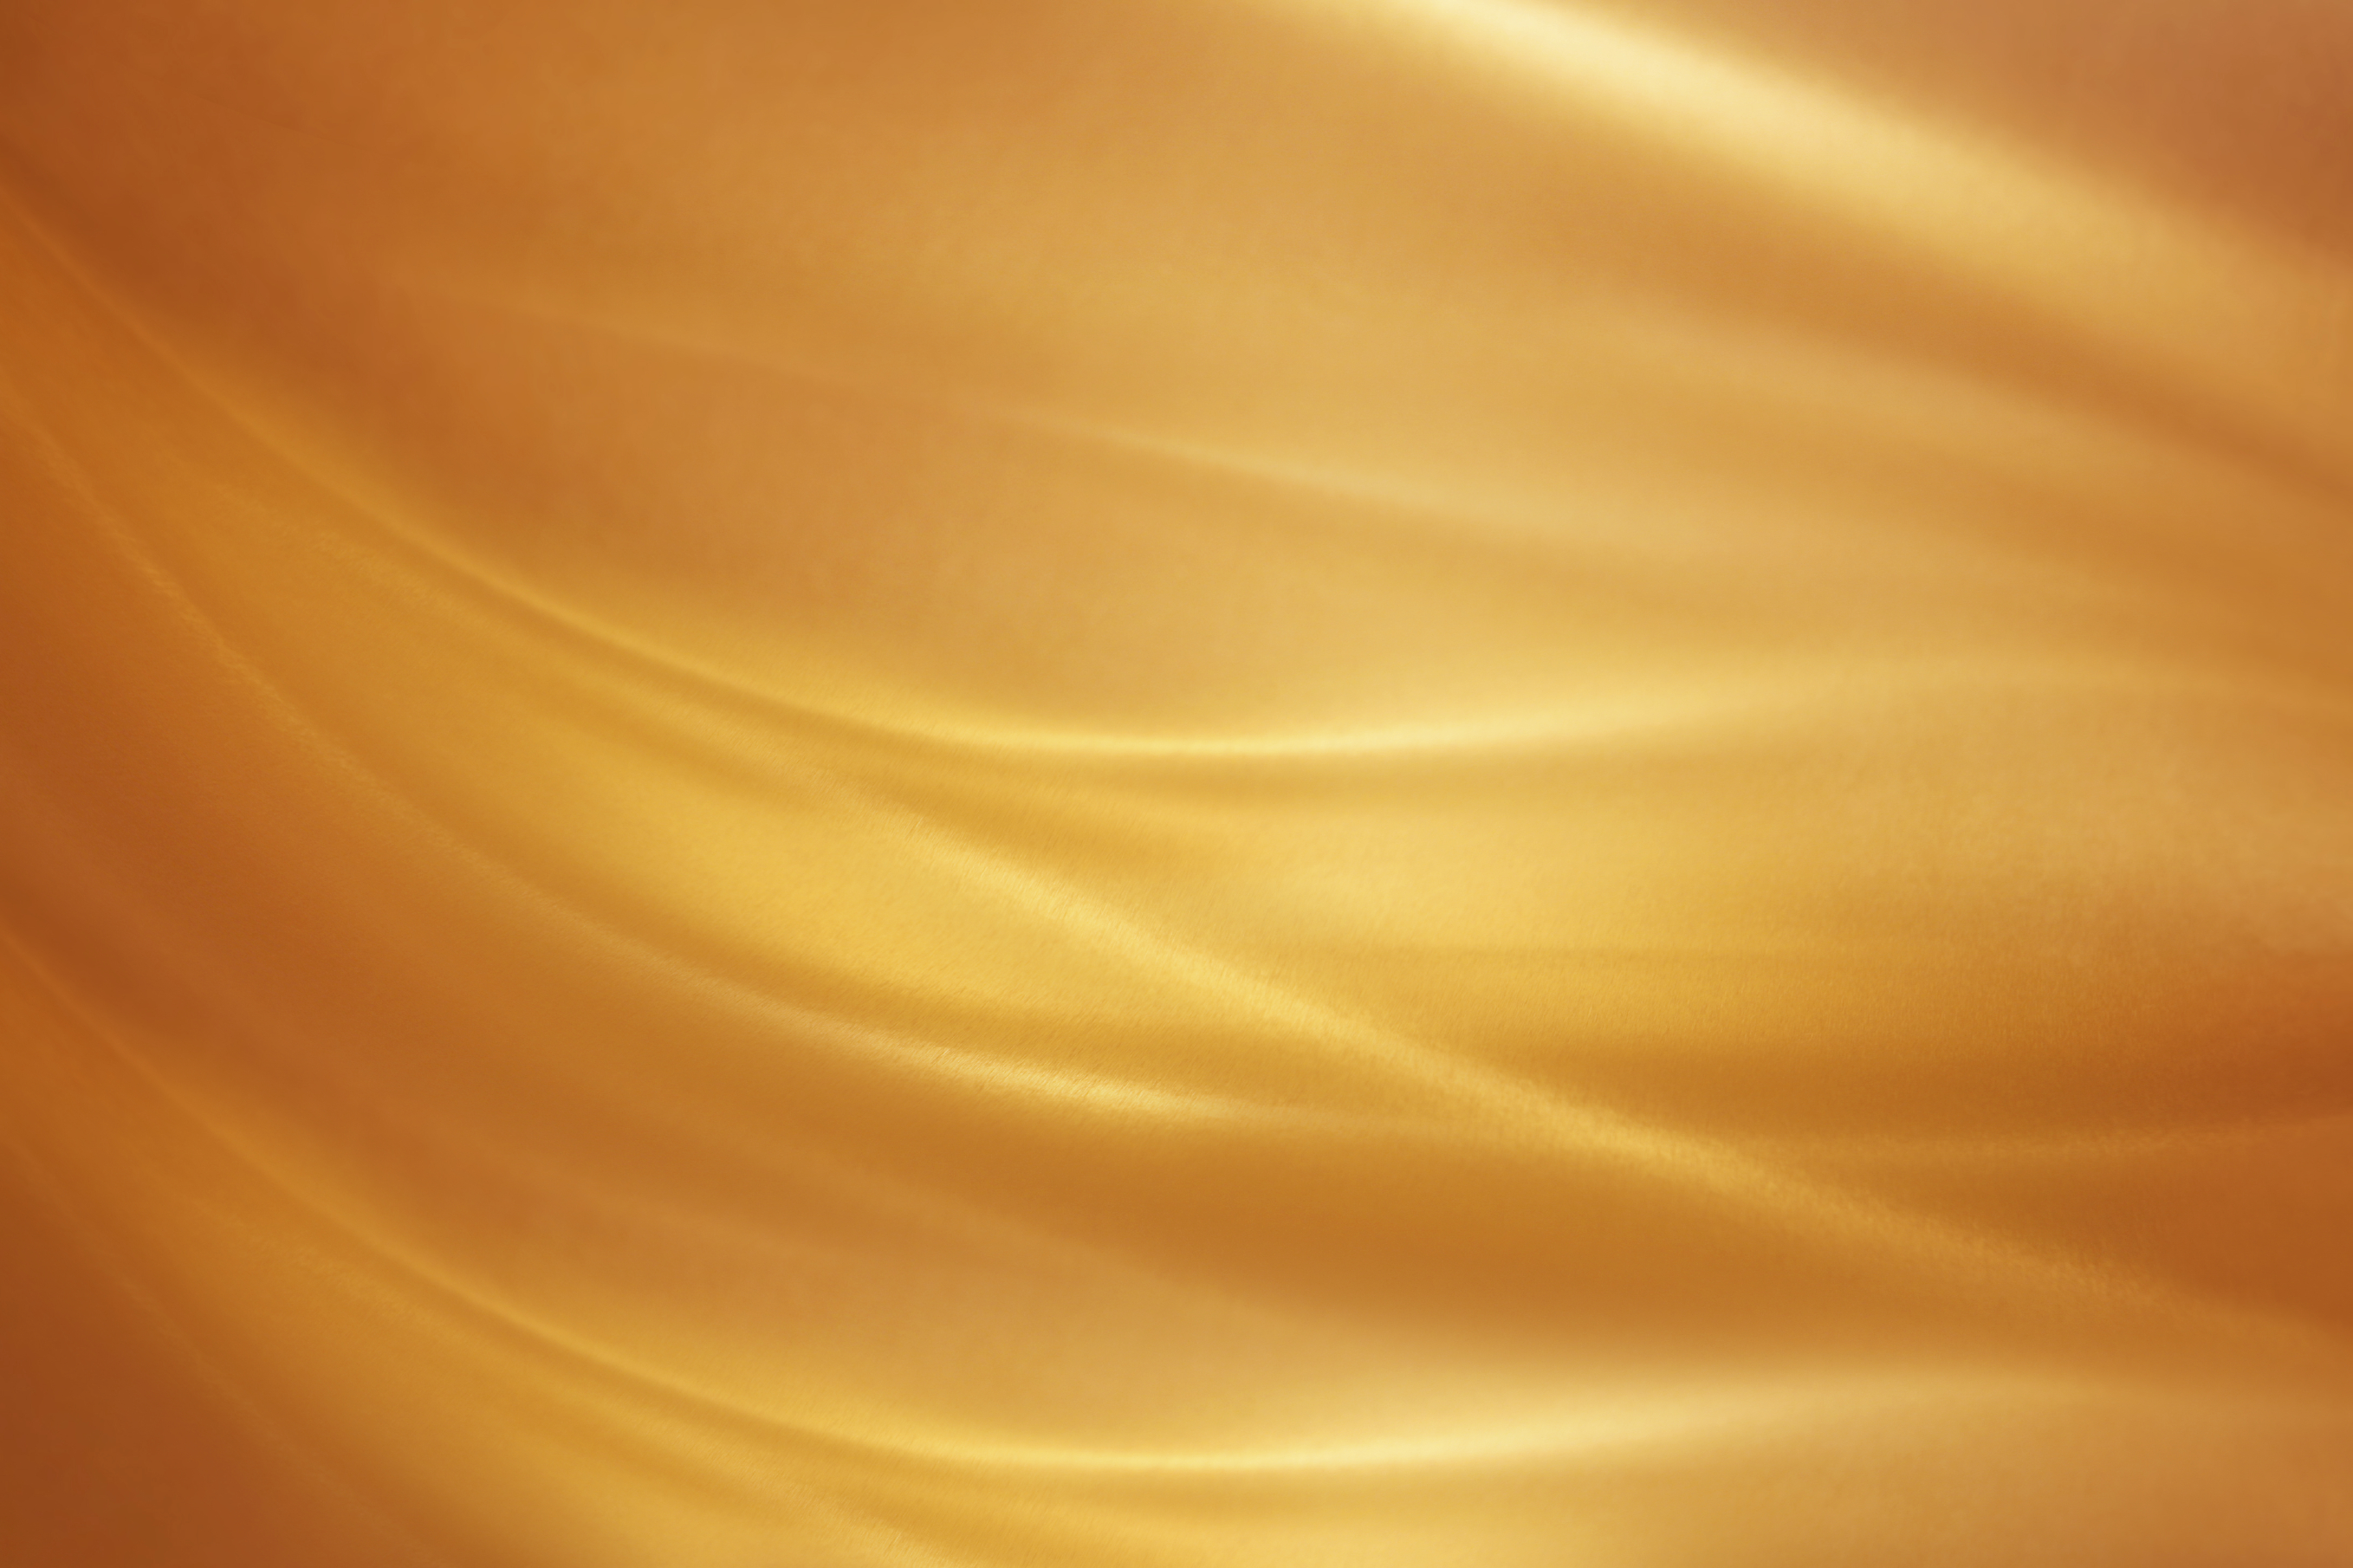 papel de seda de oro,naranja,amarillo,ámbar,oro,melocotón